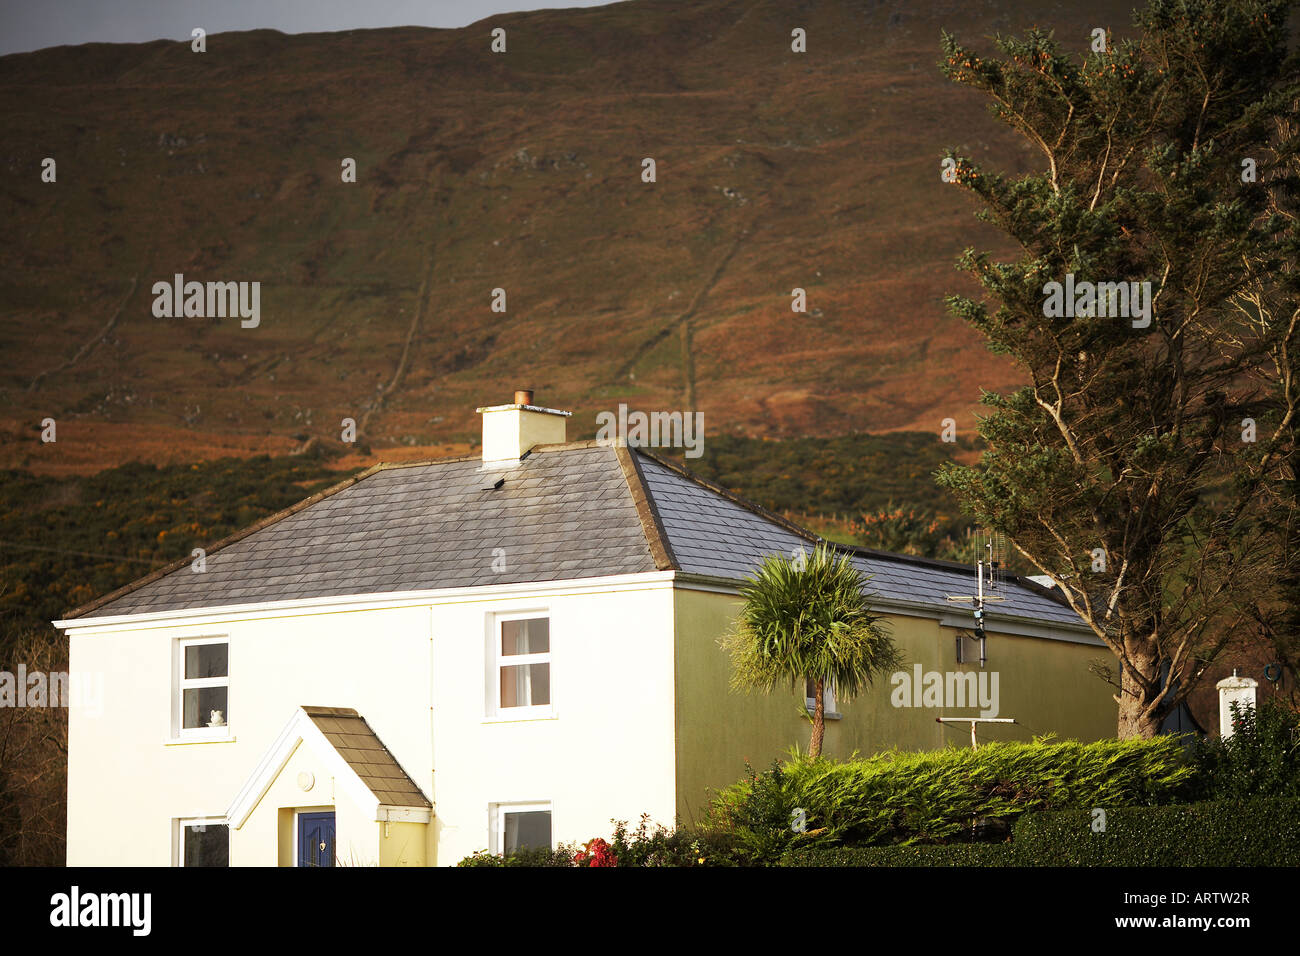 Les falaises de Slieve League Malin Beg et Glencolmkille, comté de Donegal, en République d'Irlande, Europe Banque D'Images